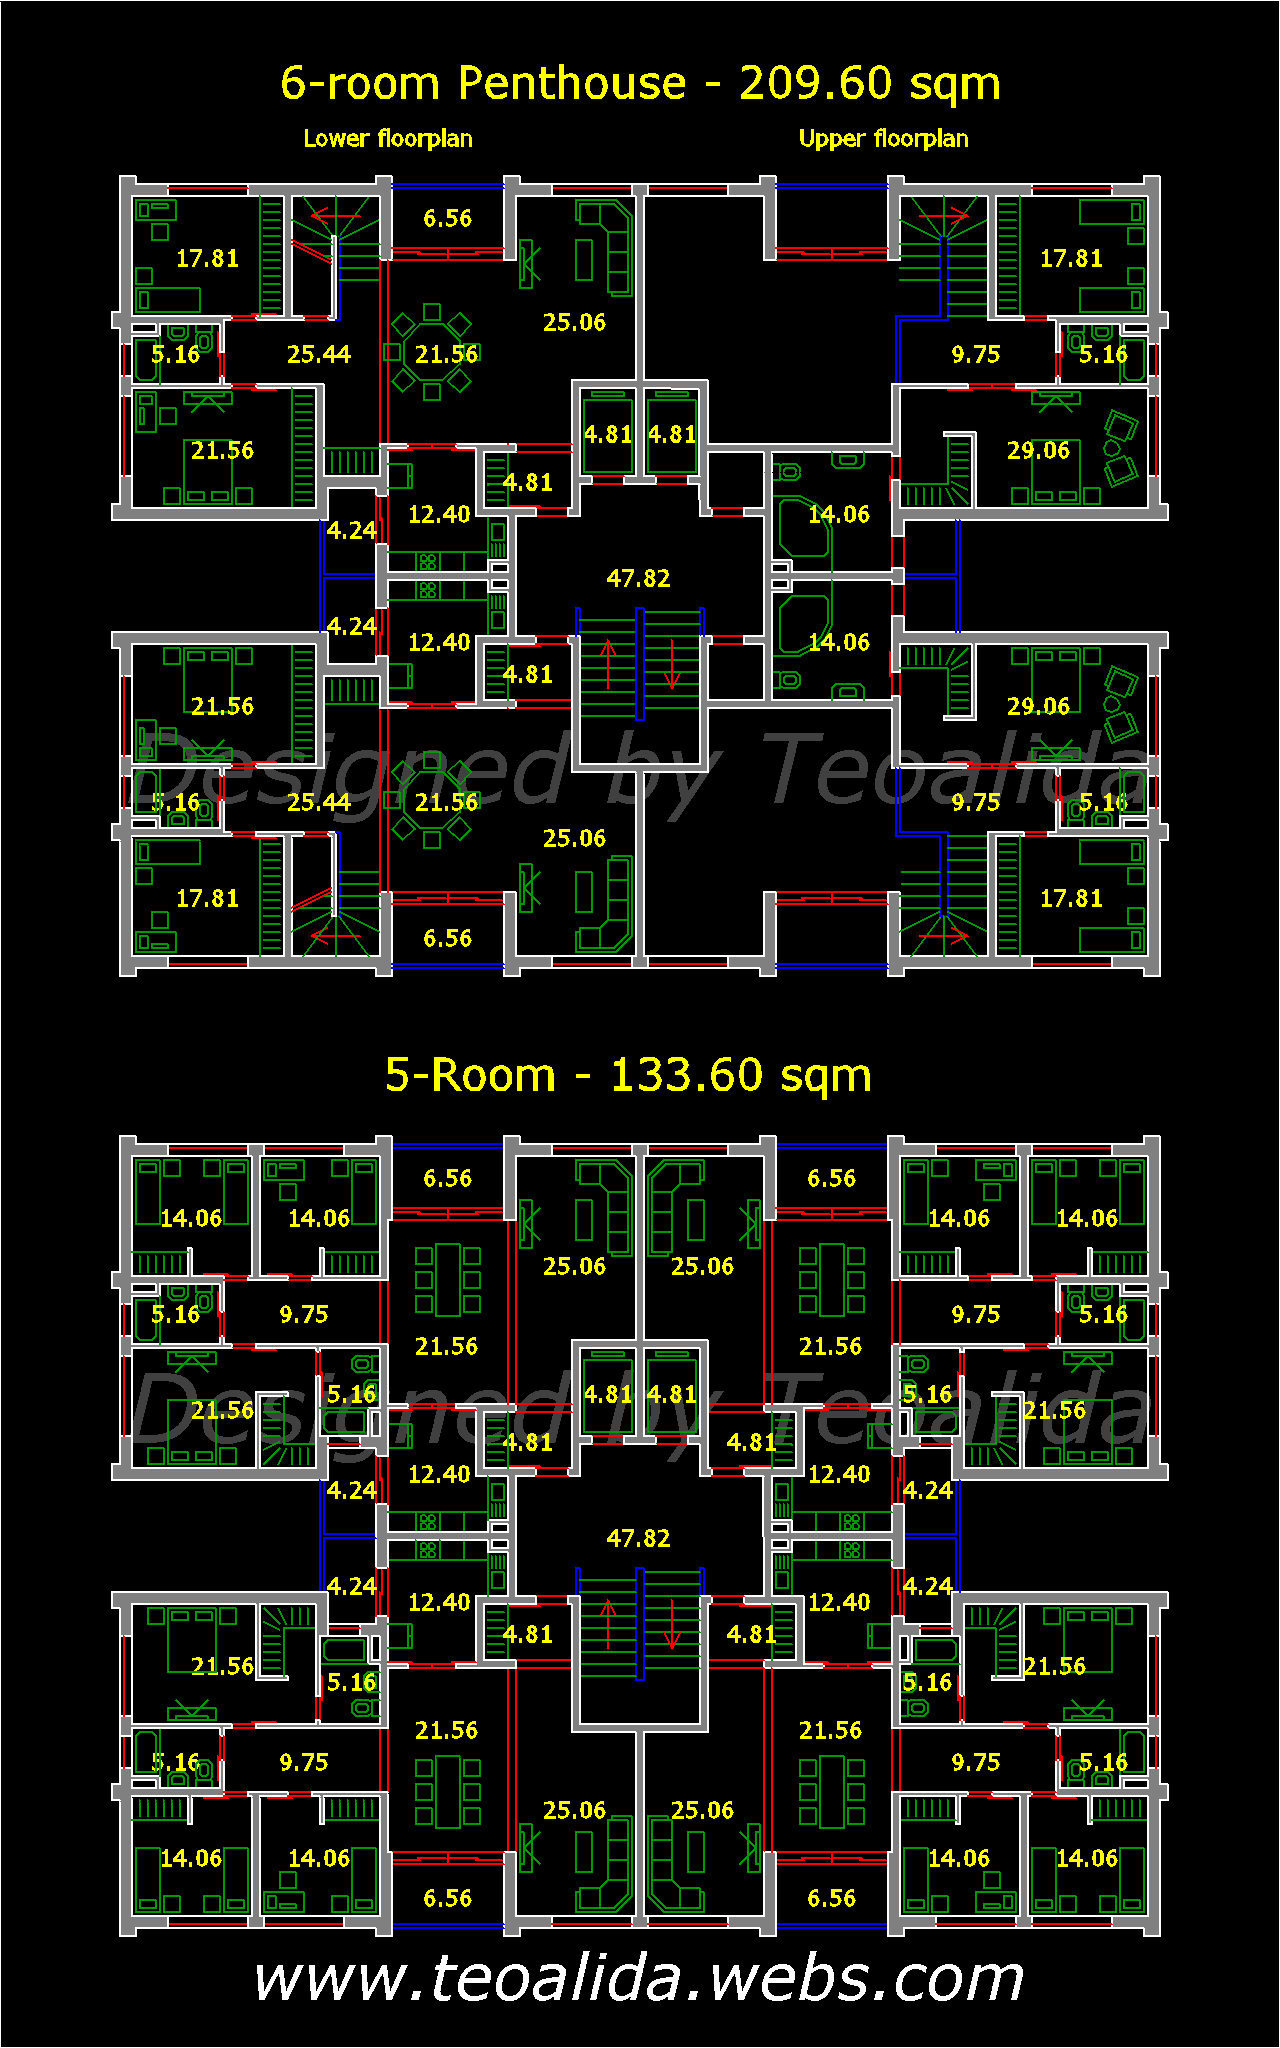 Rectangle Tower floor plan